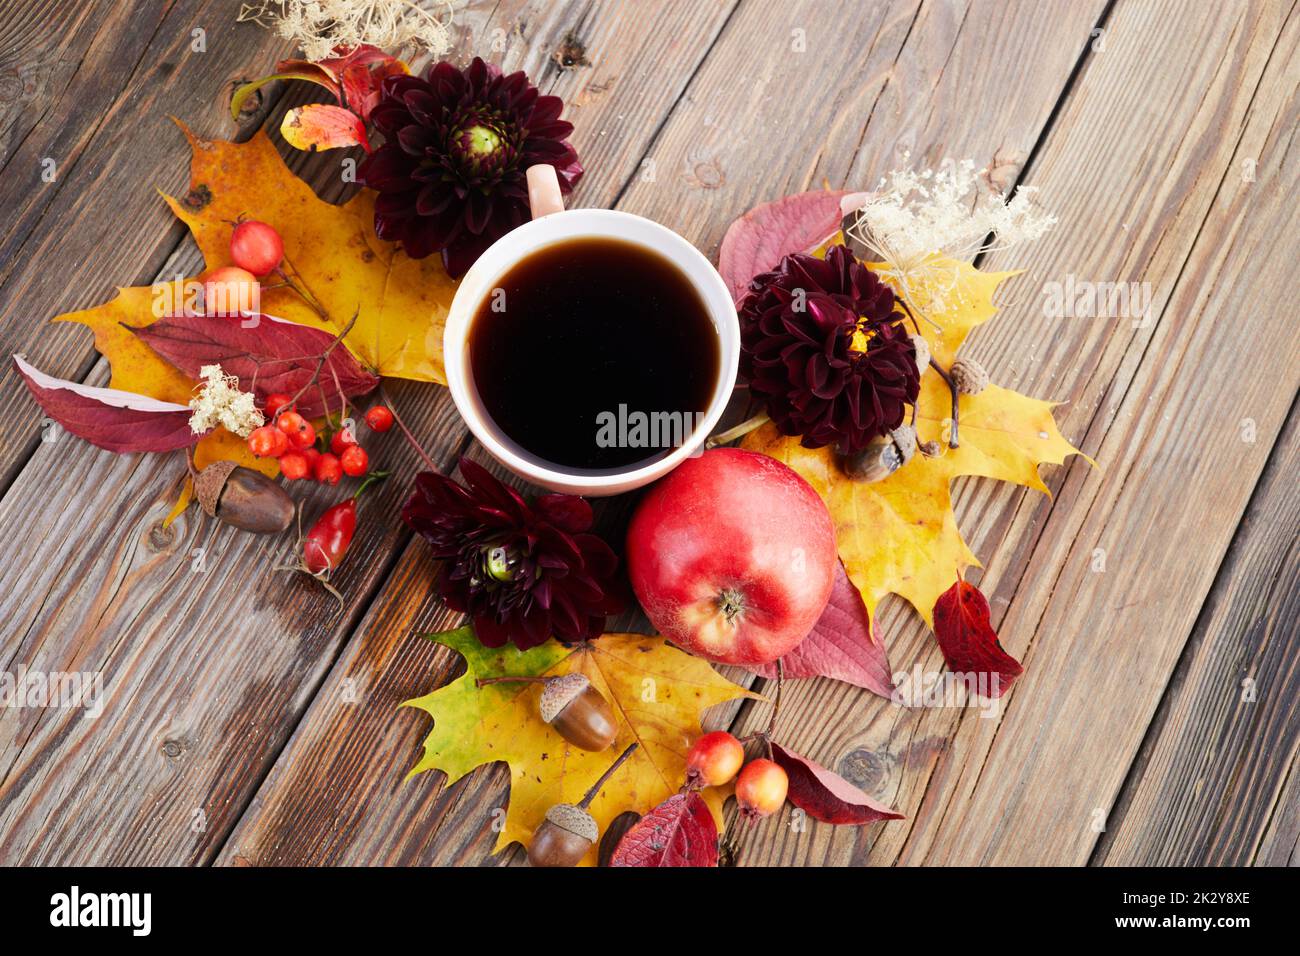 Composition d'automne - café, feuilles d'érable et fleurs sur fond de bois. Concept d'automne saisonnier avec boisson. Banque D'Images